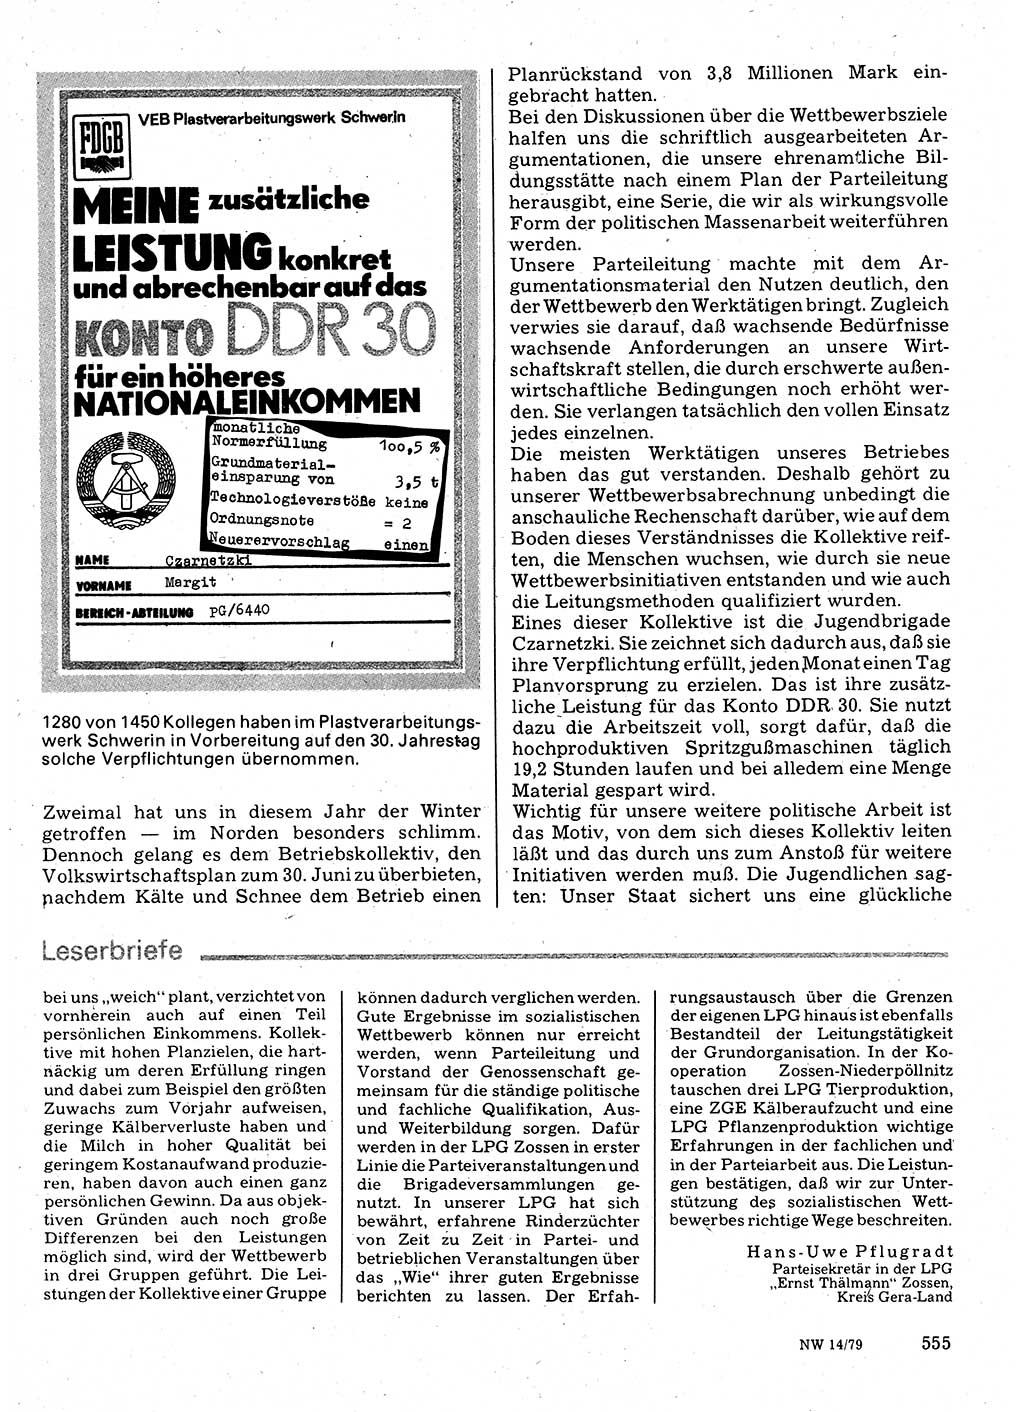 Neuer Weg (NW), Organ des Zentralkomitees (ZK) der SED (Sozialistische Einheitspartei Deutschlands) für Fragen des Parteilebens, 34. Jahrgang [Deutsche Demokratische Republik (DDR)] 1979, Seite 555 (NW ZK SED DDR 1979, S. 555)